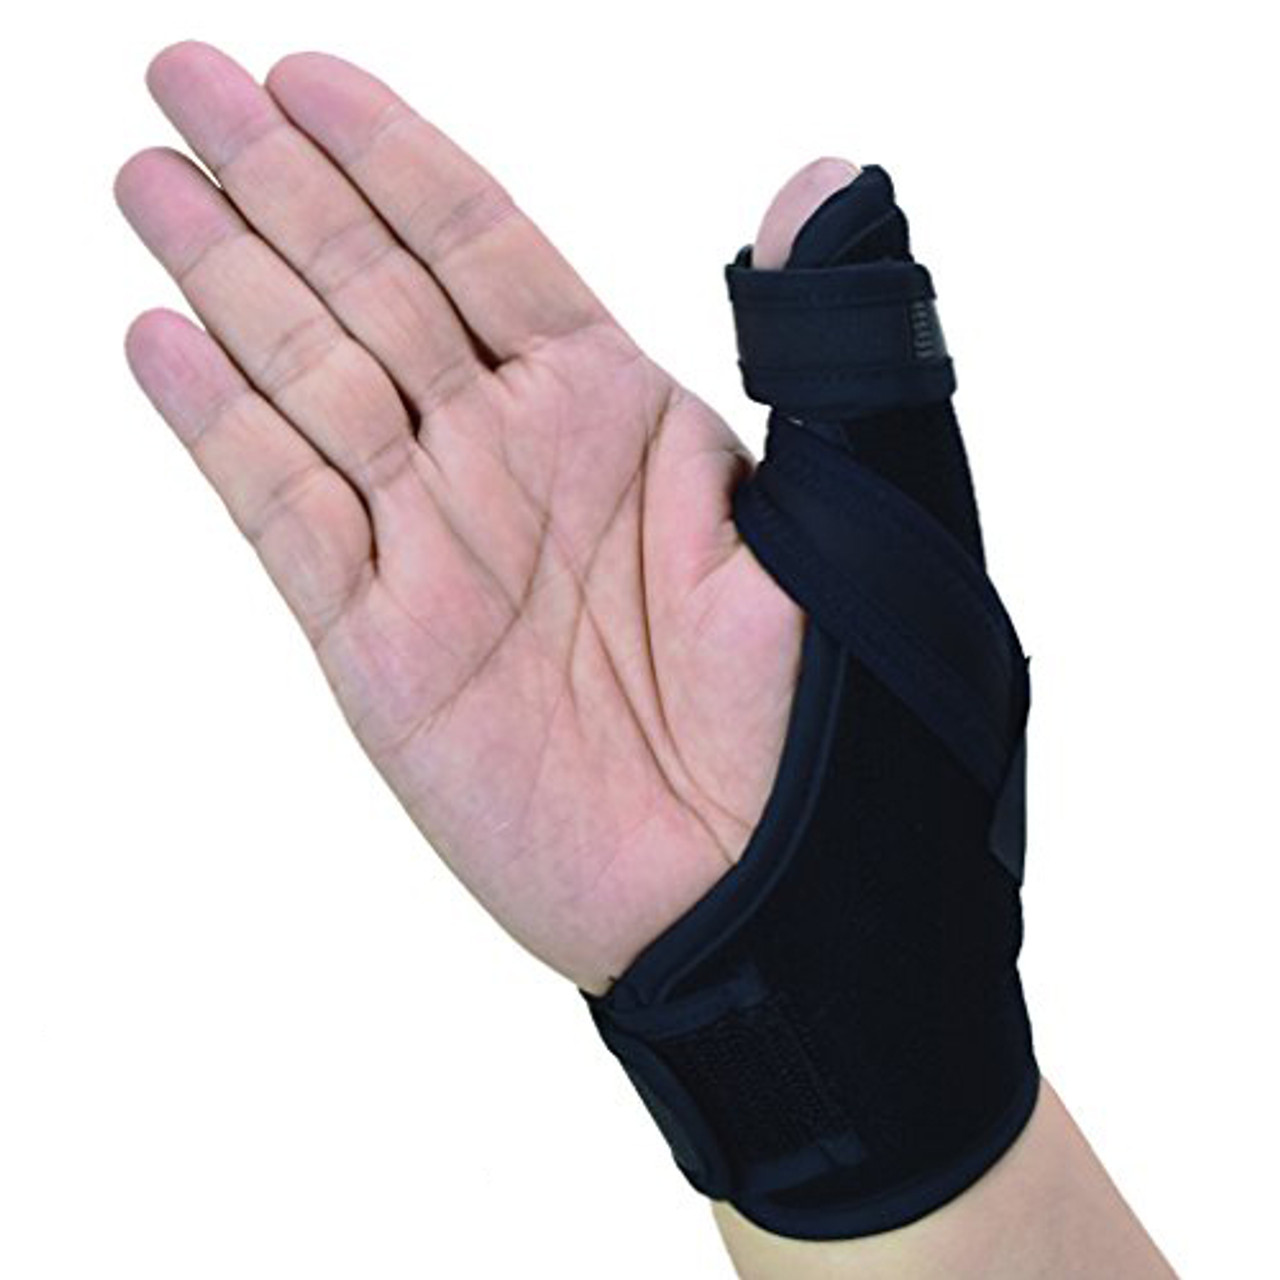 U.S. Solid Thumb Spica Splint